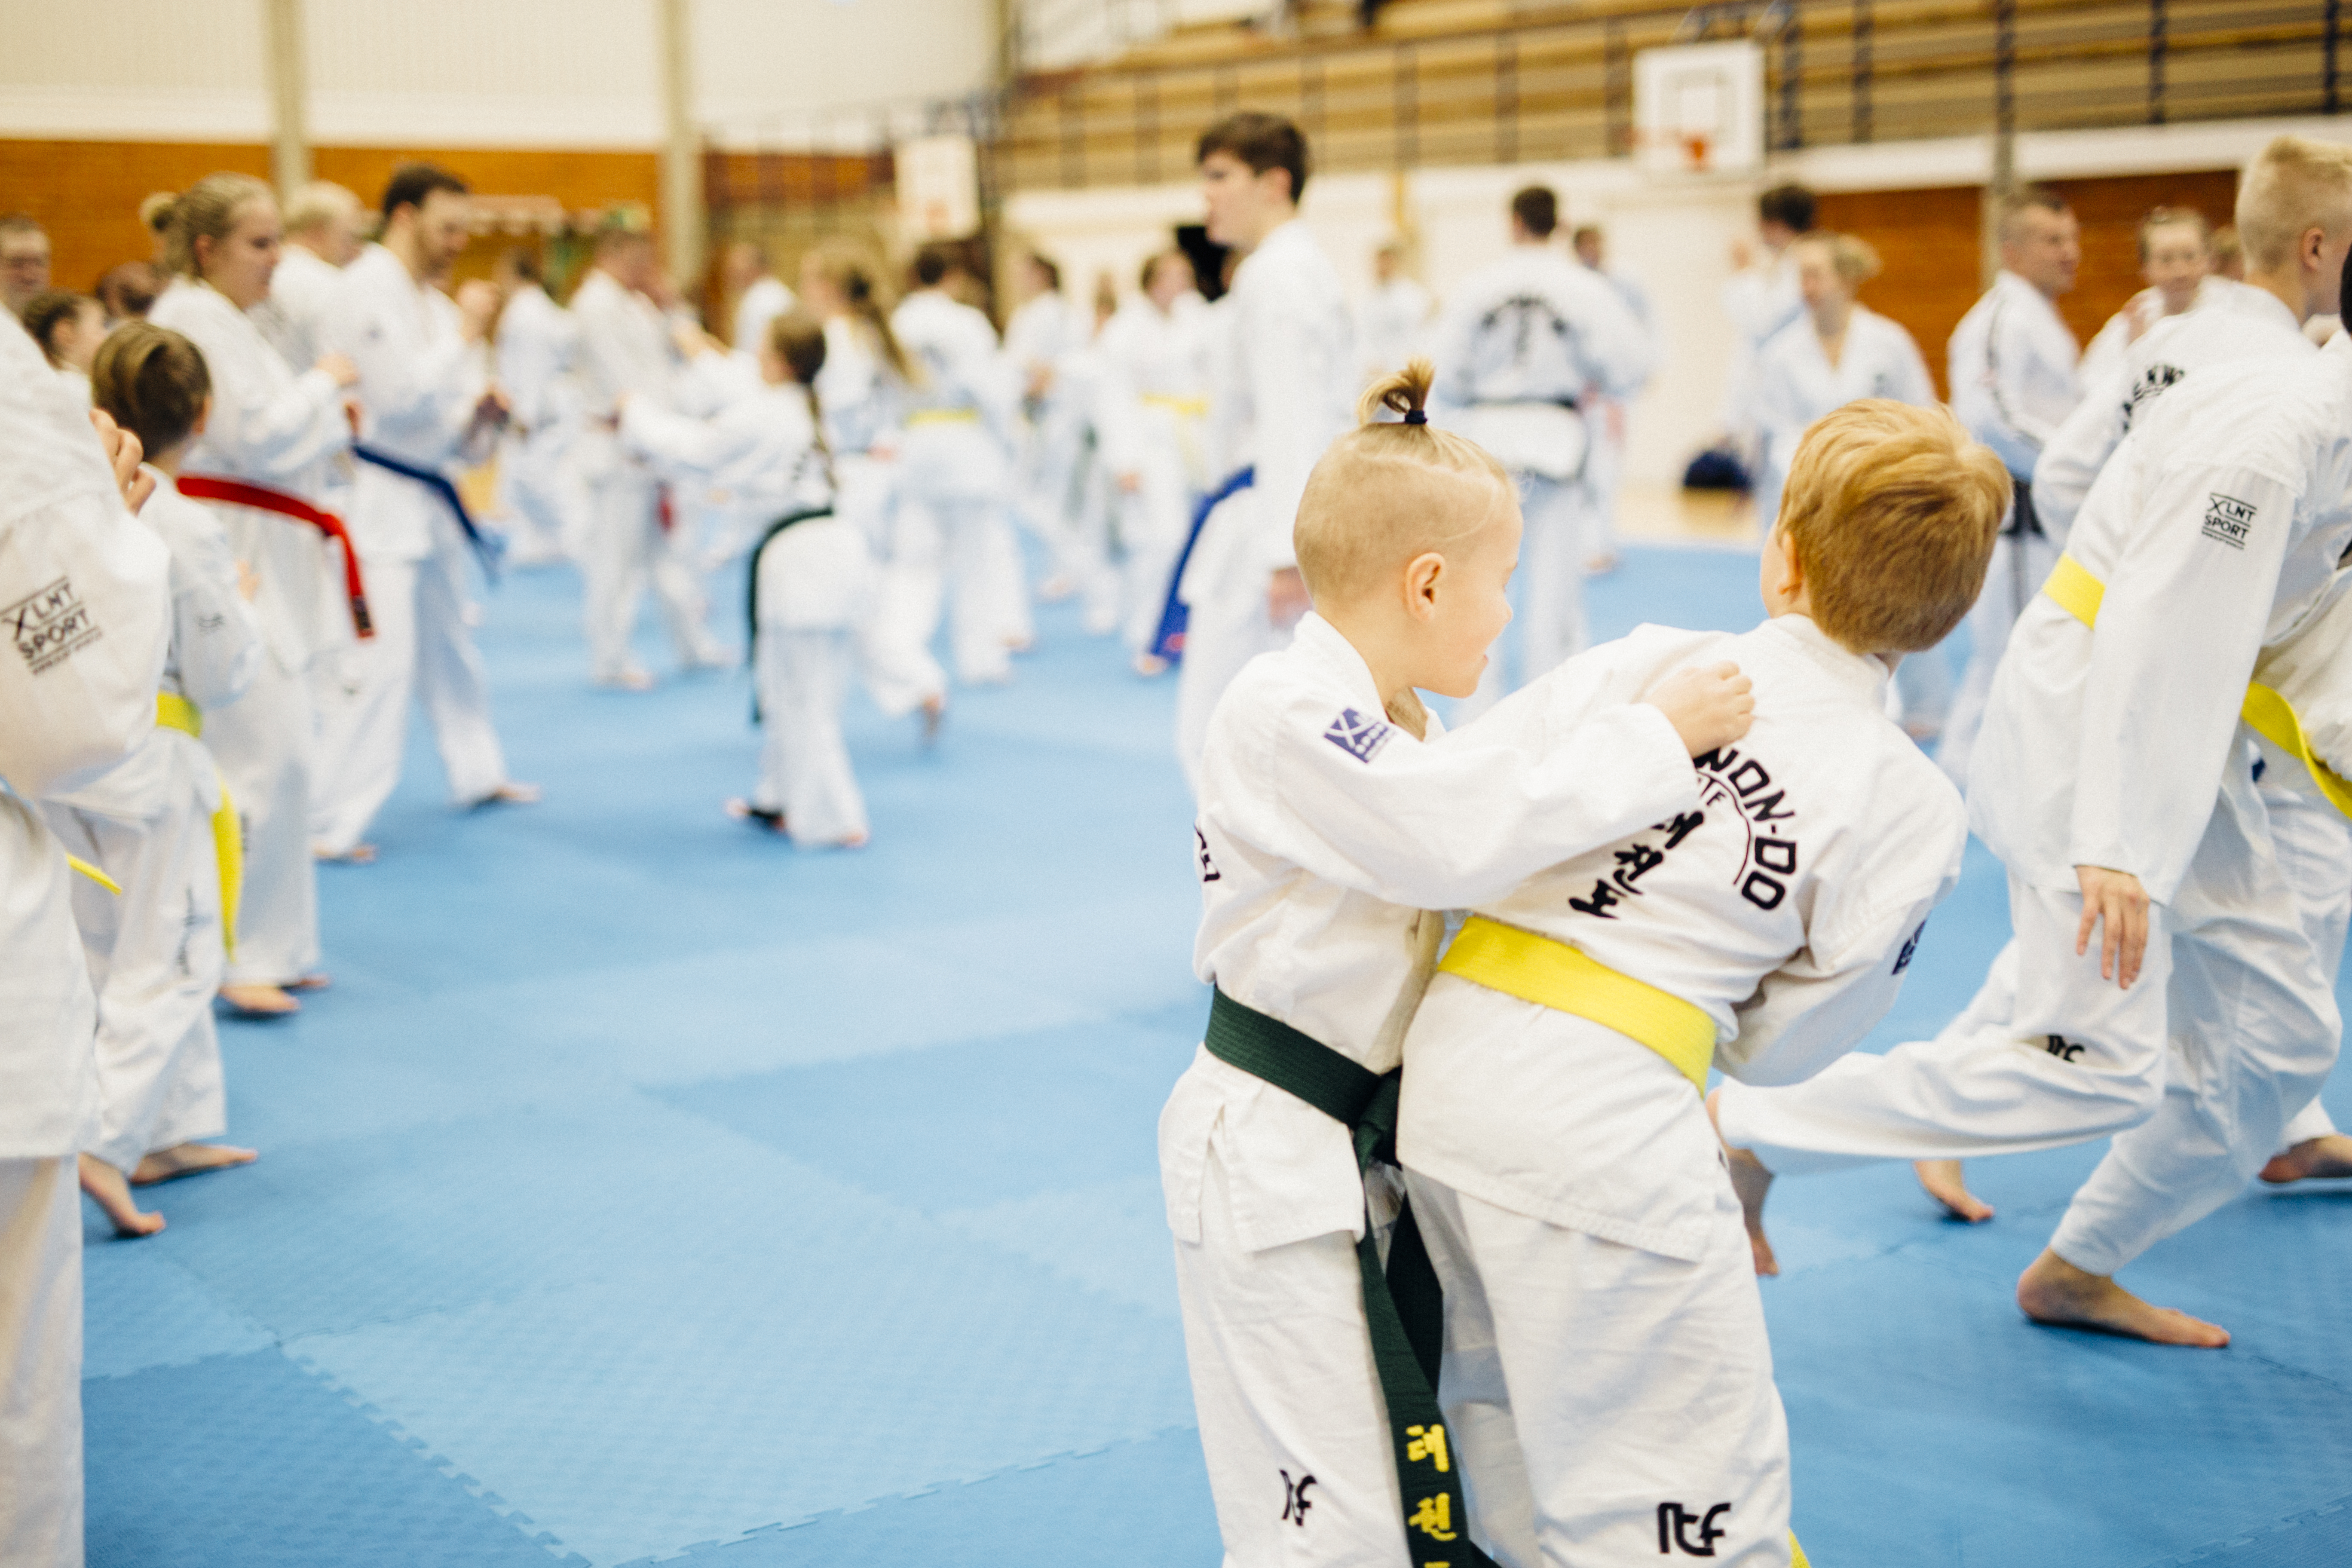 Tukea junioreiden harrastamiseen! Seuramme mukana Jyväskylän kaupungin harrastustukihankkeessa